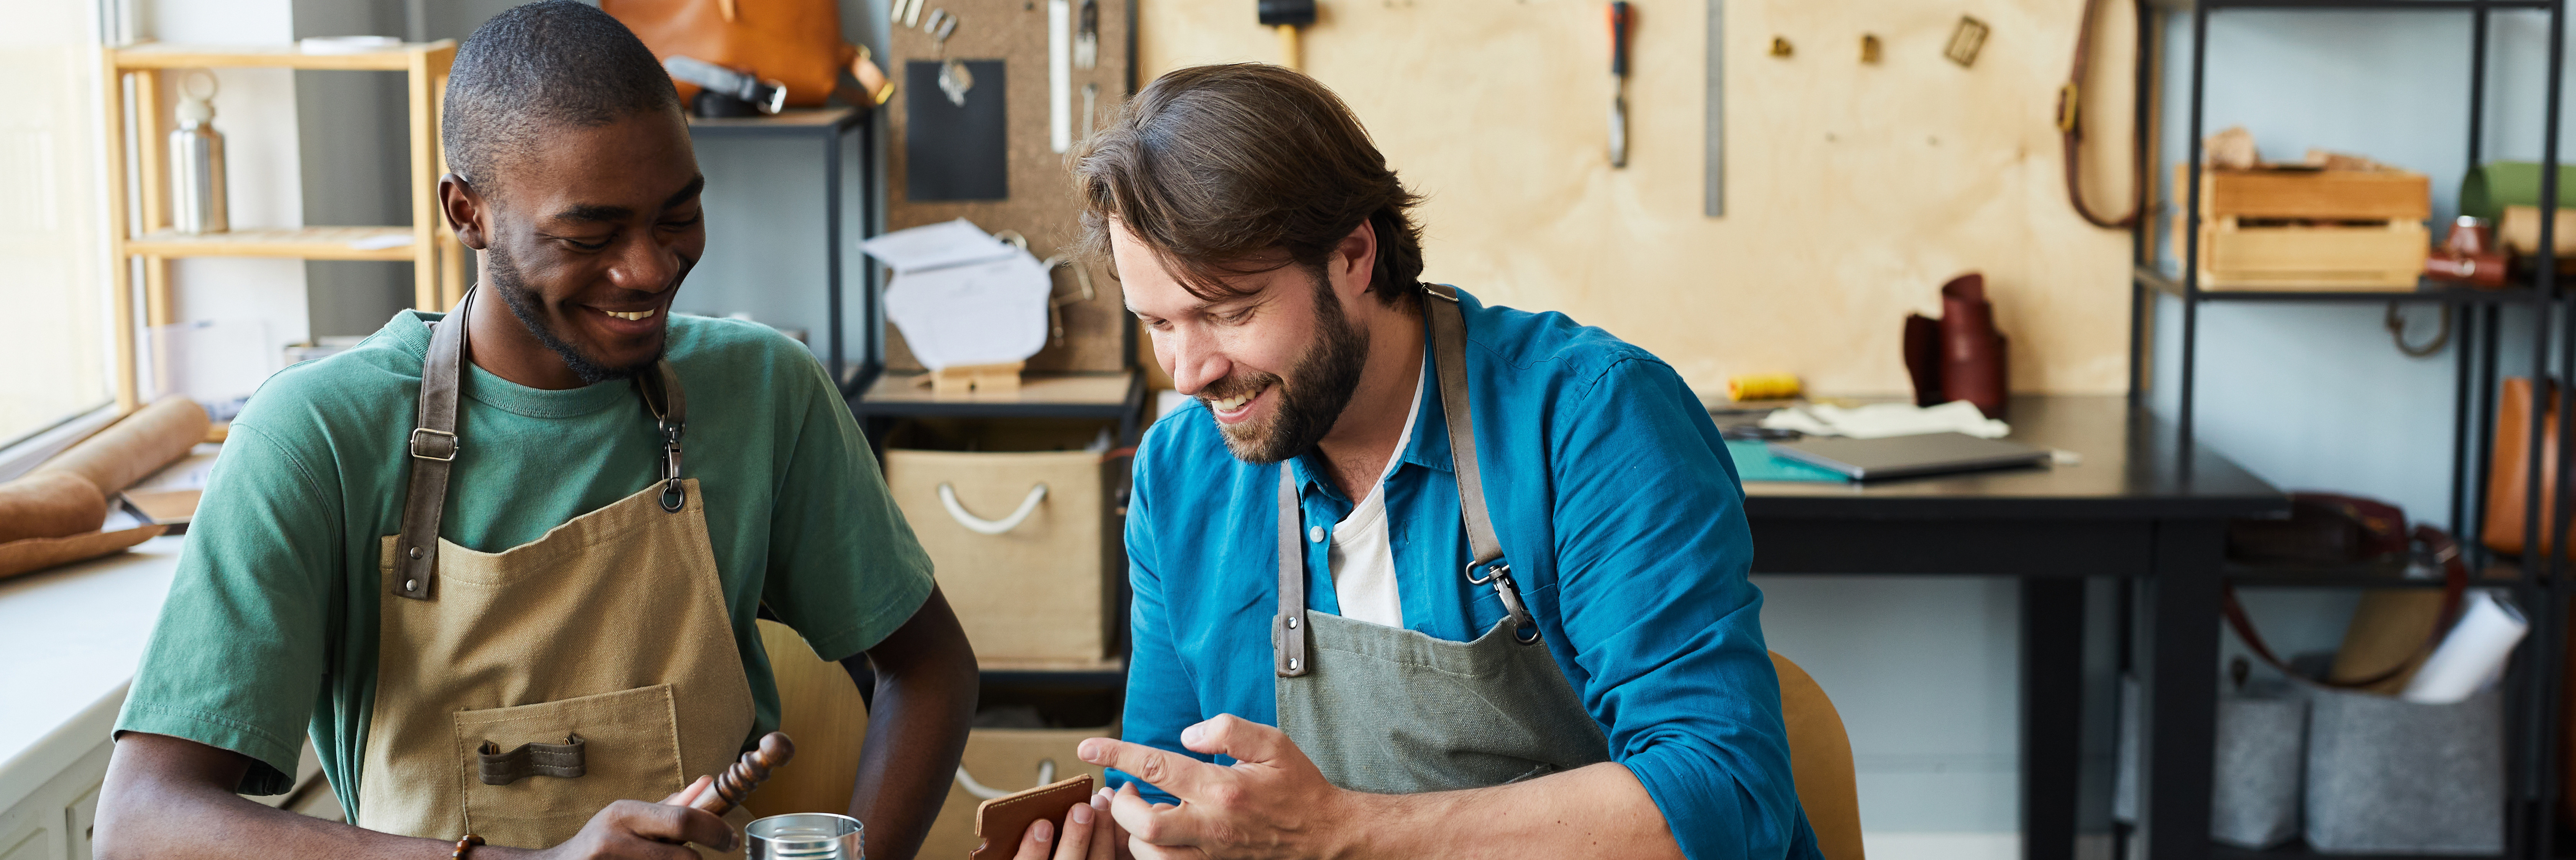 Foto: zwei junge Männer sitzen lächelnd und arbeitend an einer Werkbank und bearbeiten Leder.
